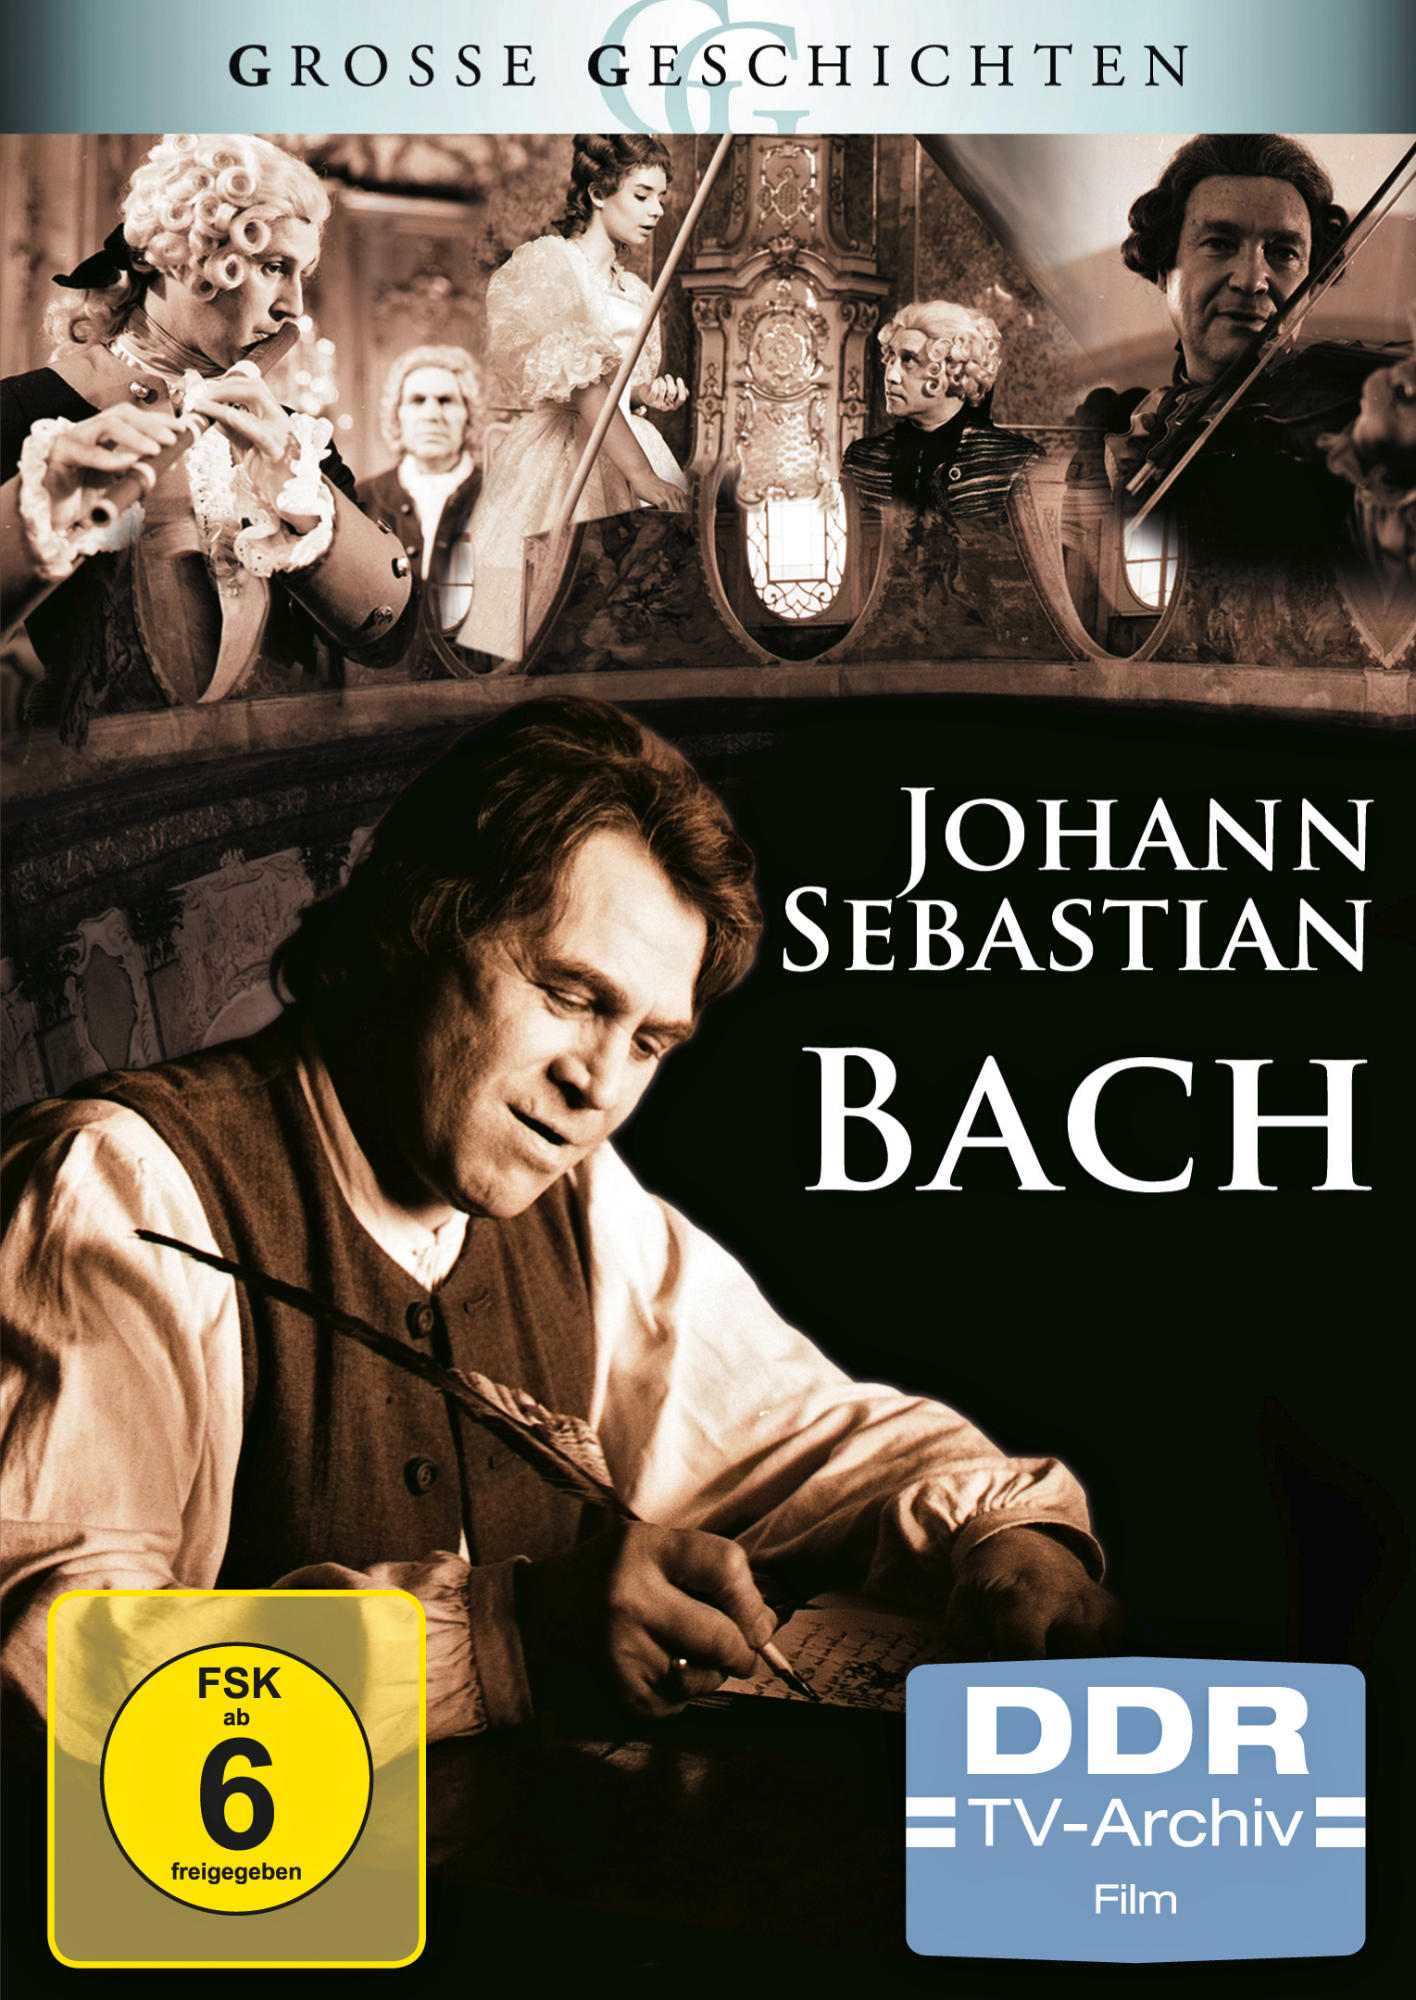 JOHANN SEBASTIAN BACH (GROSSE GESCHICHTEN) DVD